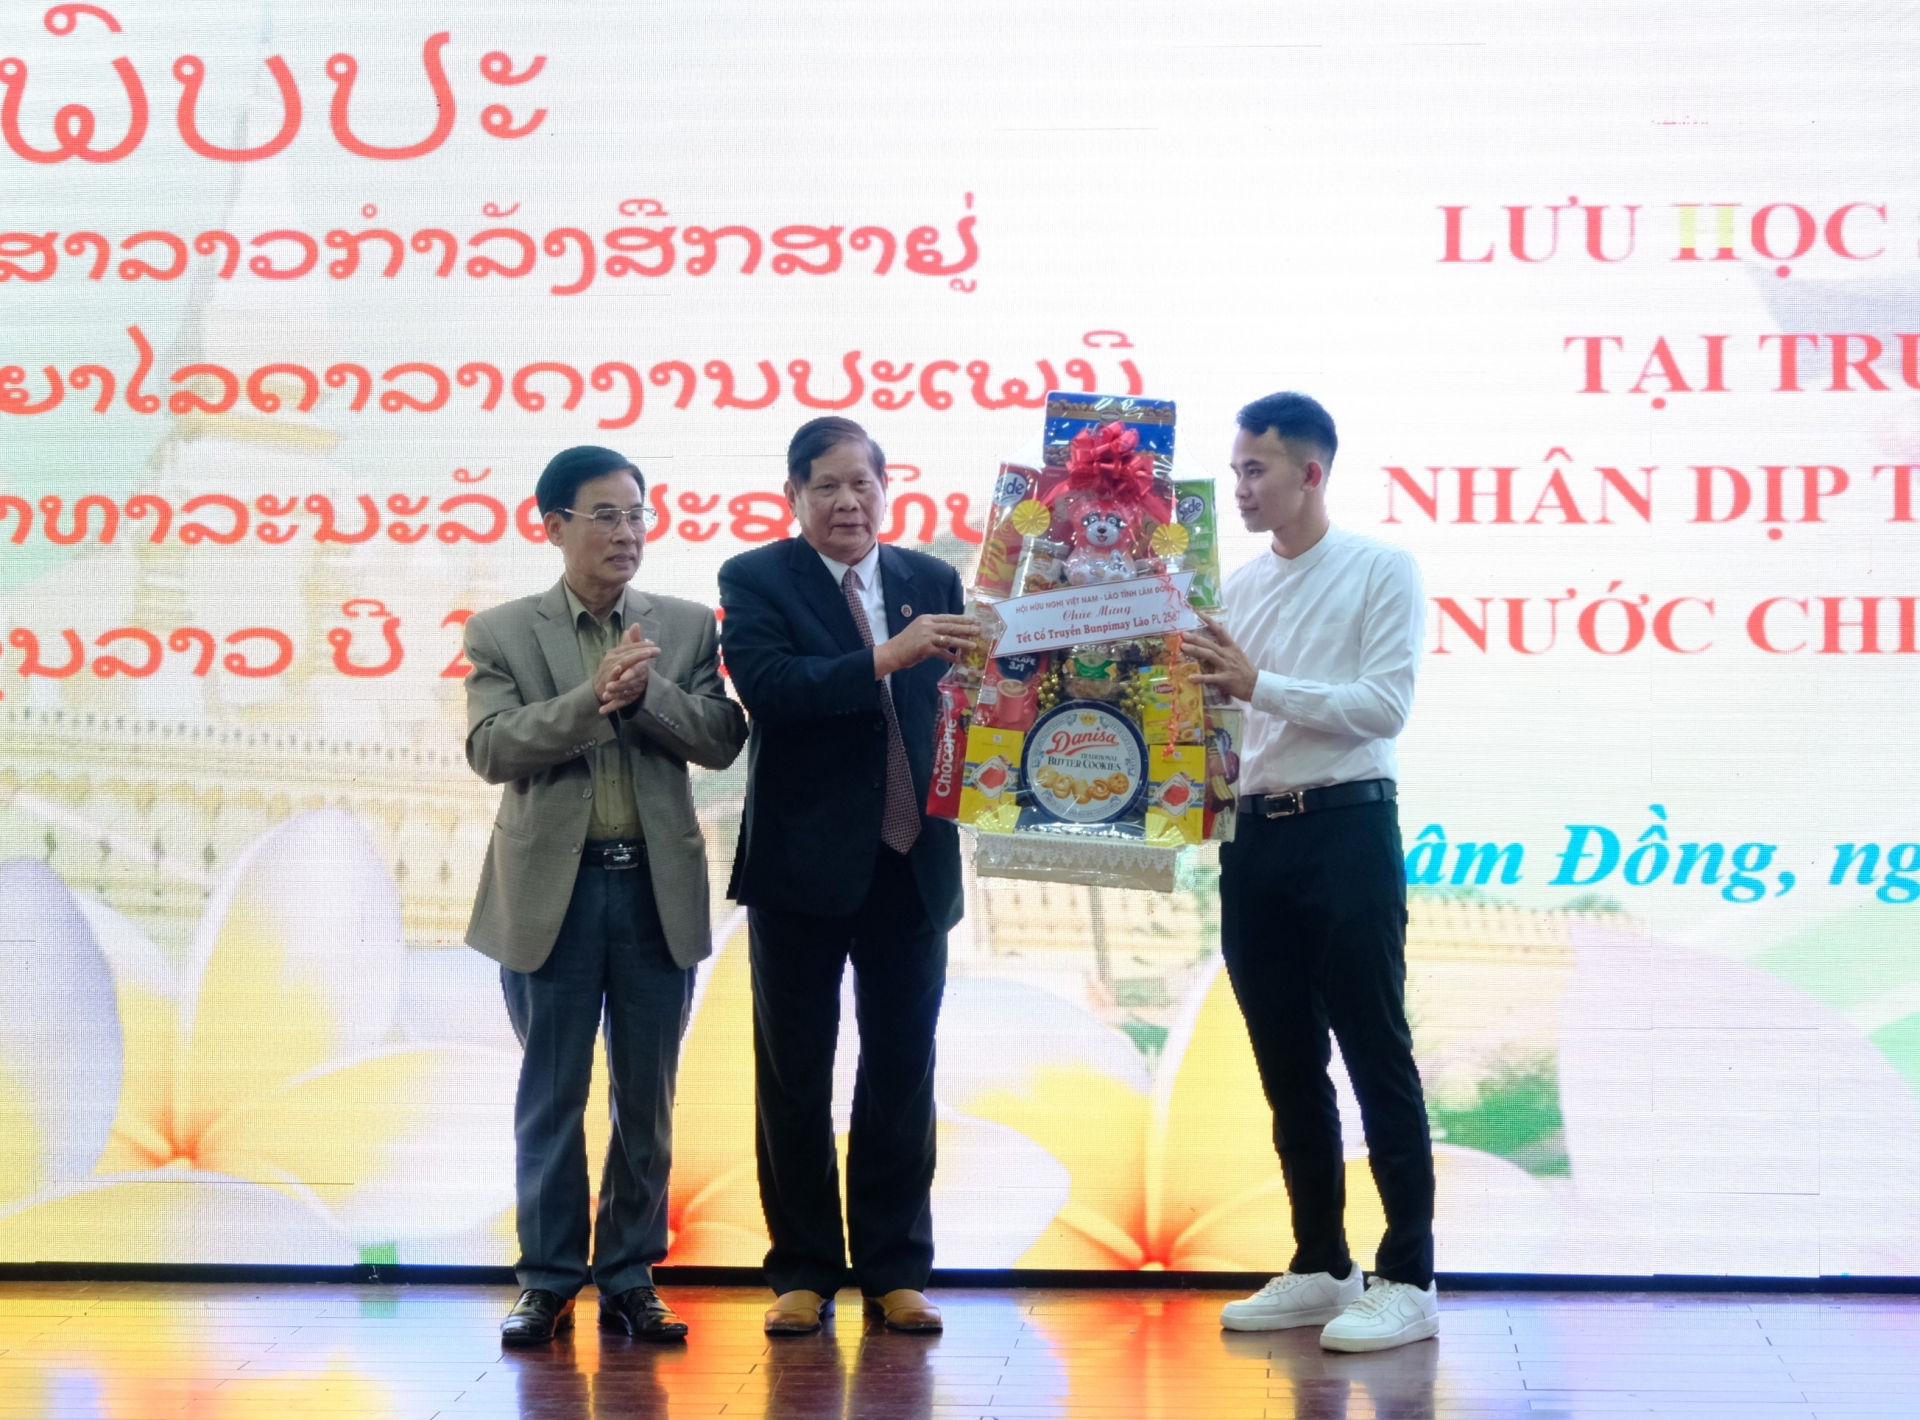 Hội Hữu nghị Việt Nam - Lào tỉnh Lâm Đồng tặng quà chúc mừng năm mới cho lưu học sinh Lào